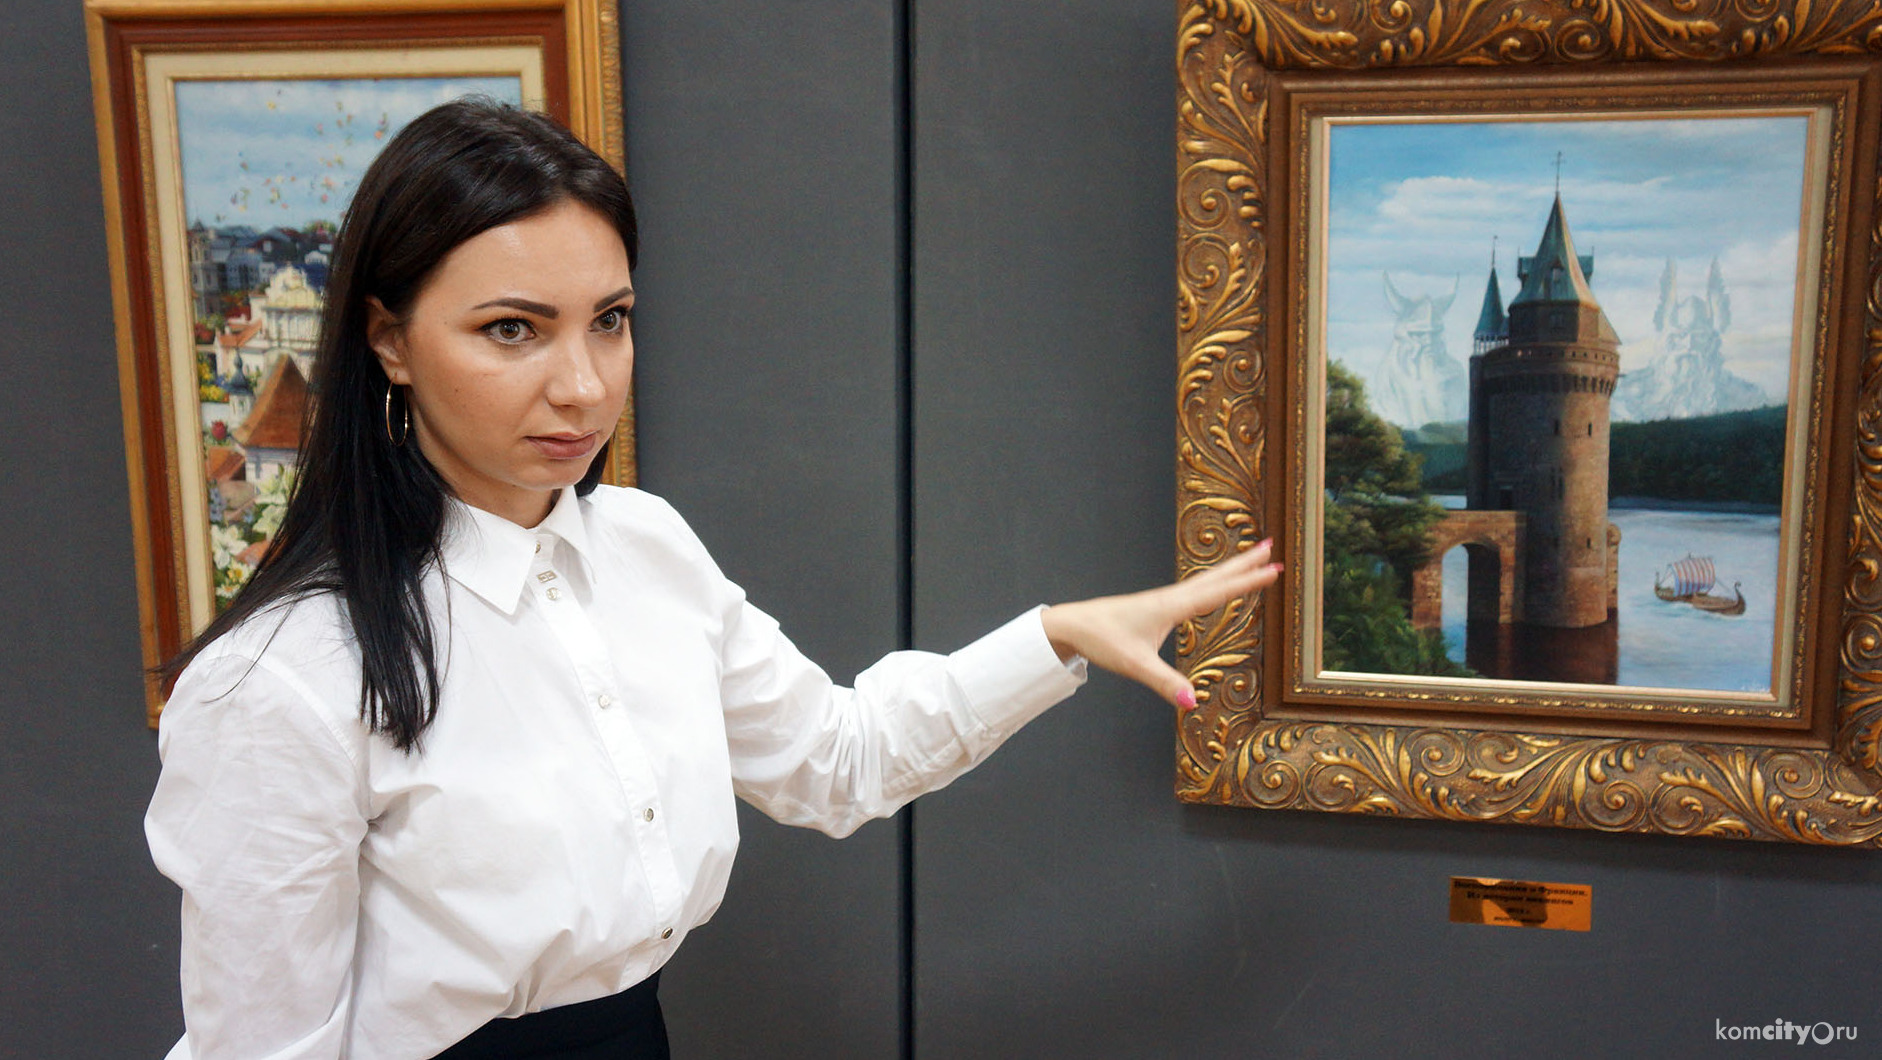 Картины Никаса Сафронова можно увидеть в Музее изобразительных искусств в Комсомольске-на-Амуре